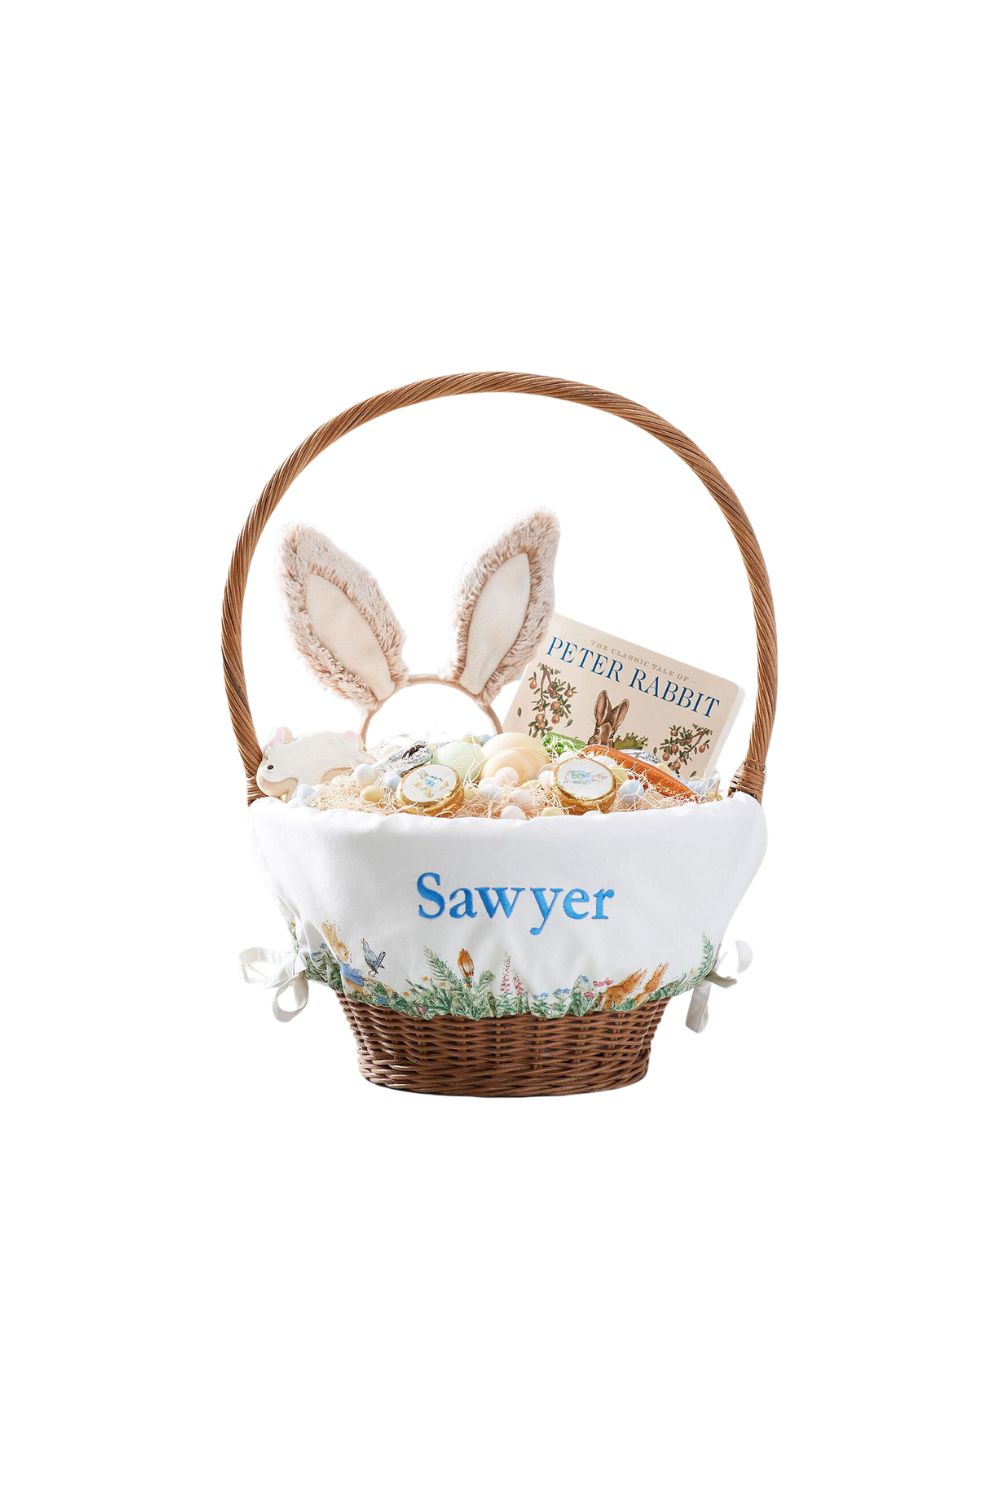 Easter basket ideas for kids, kids Easter basket, Easter basket ideas for toddler, Easter basket ideas for babies